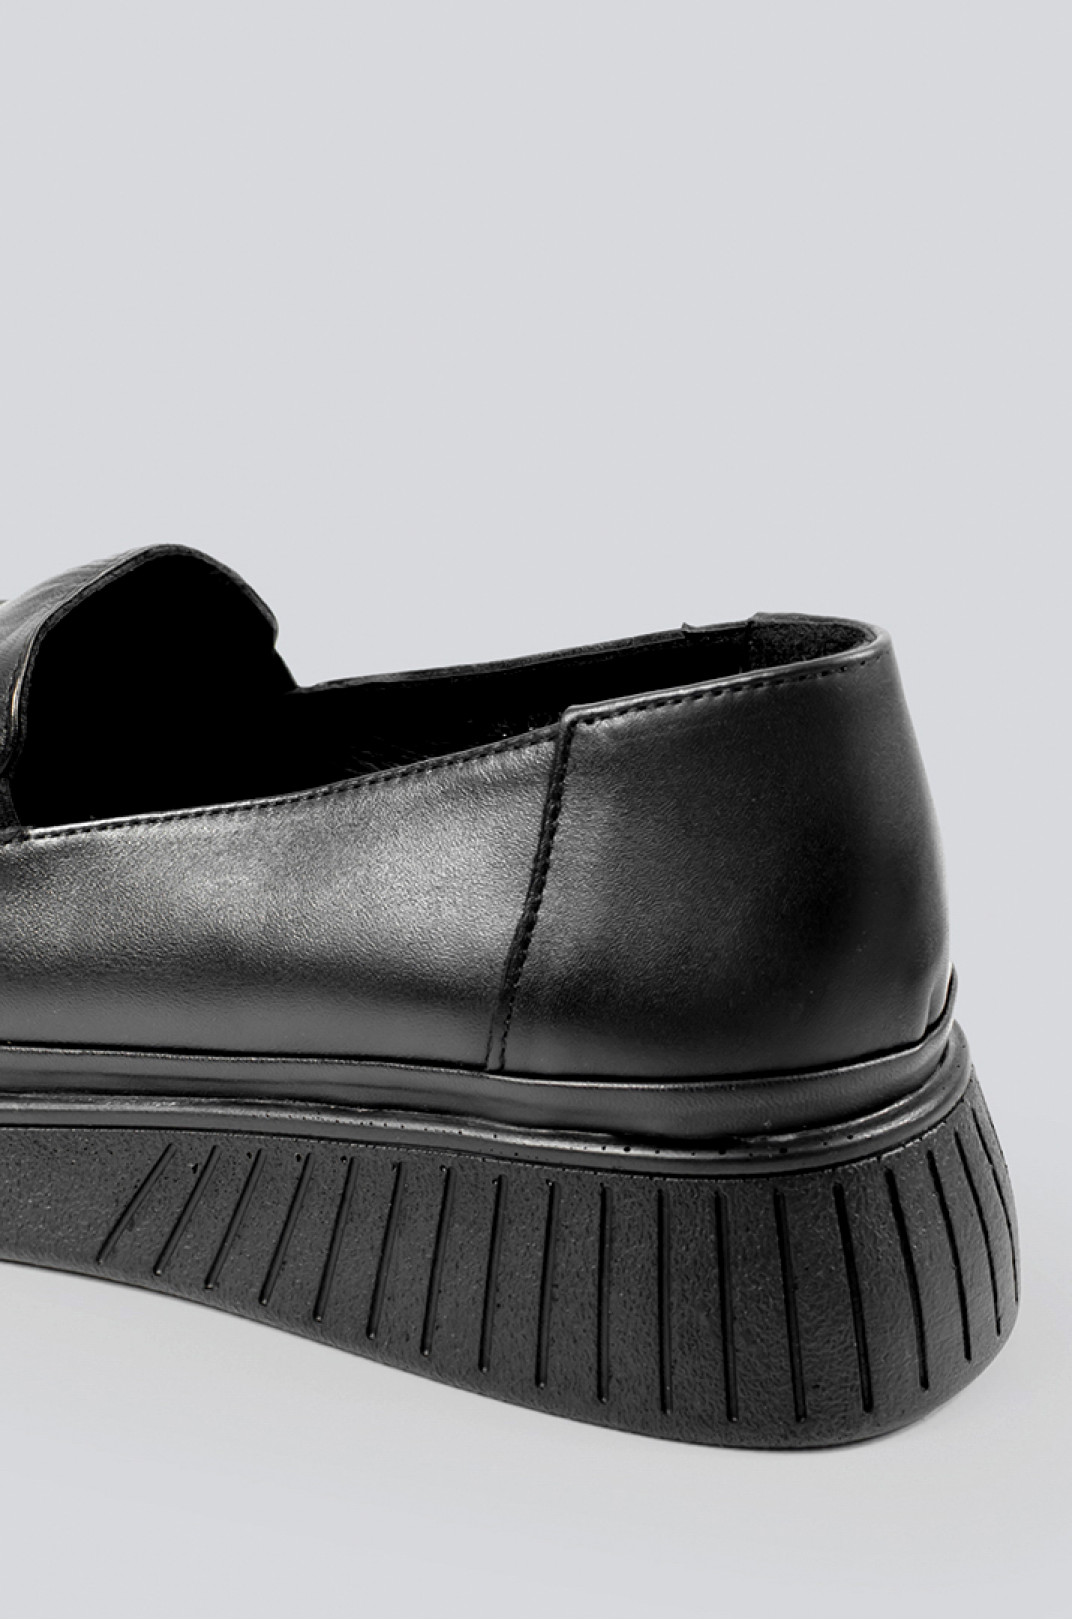 Туфли черные с украшением больших размеров